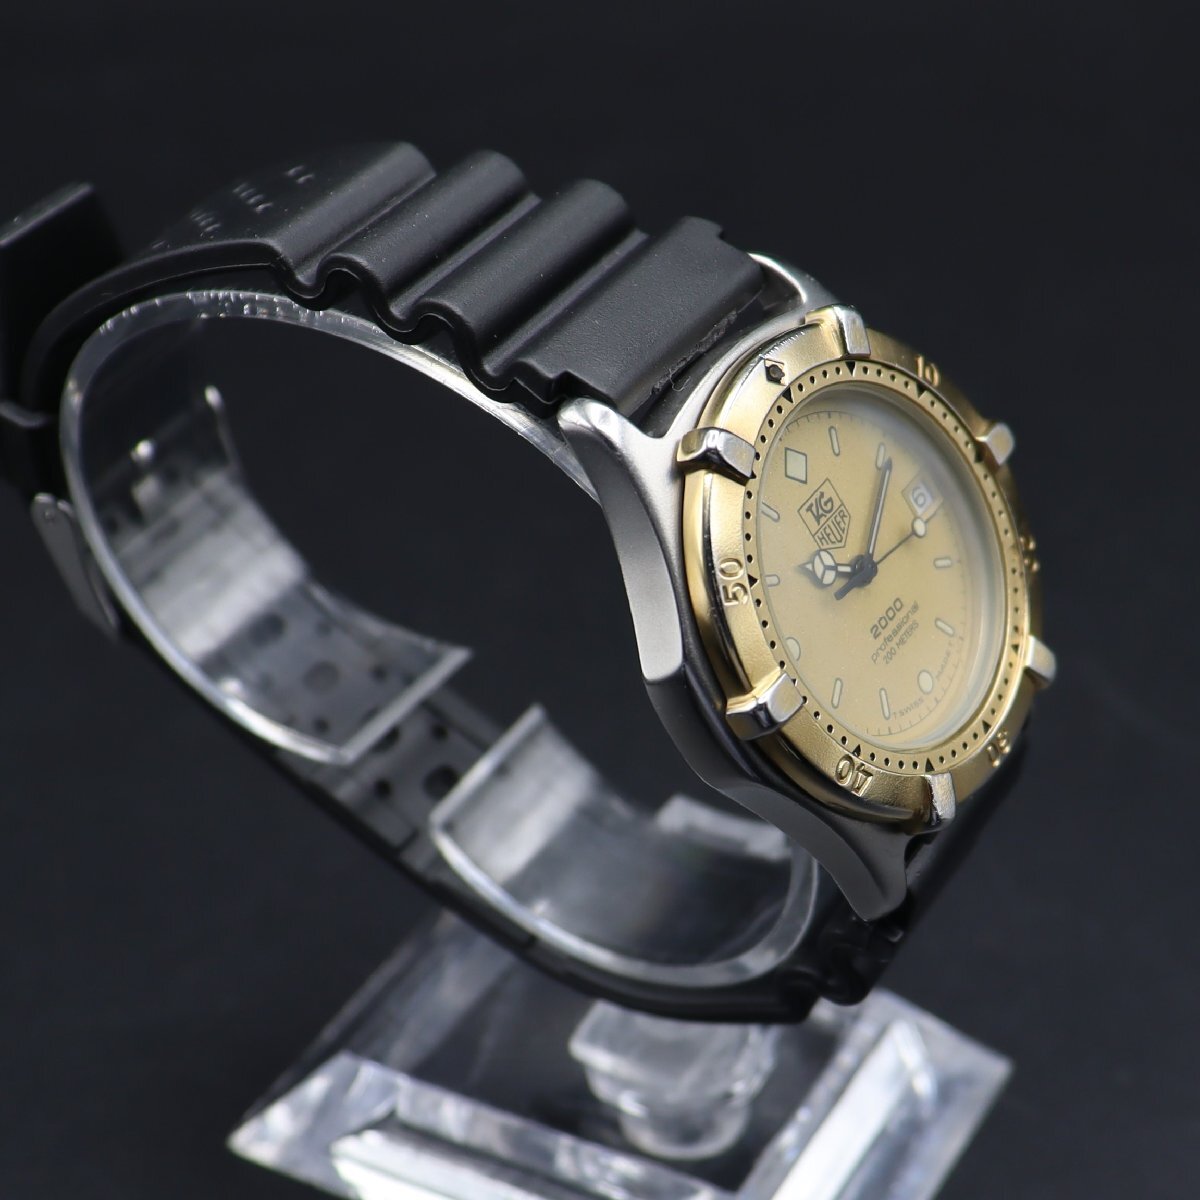 TAG HEUER タグホイヤー プロフェッショナル 2000 クォーツ 200M防水 964.013 デイト コンビカラー スイス 新品ラバーベルト メンズ腕時計の画像4